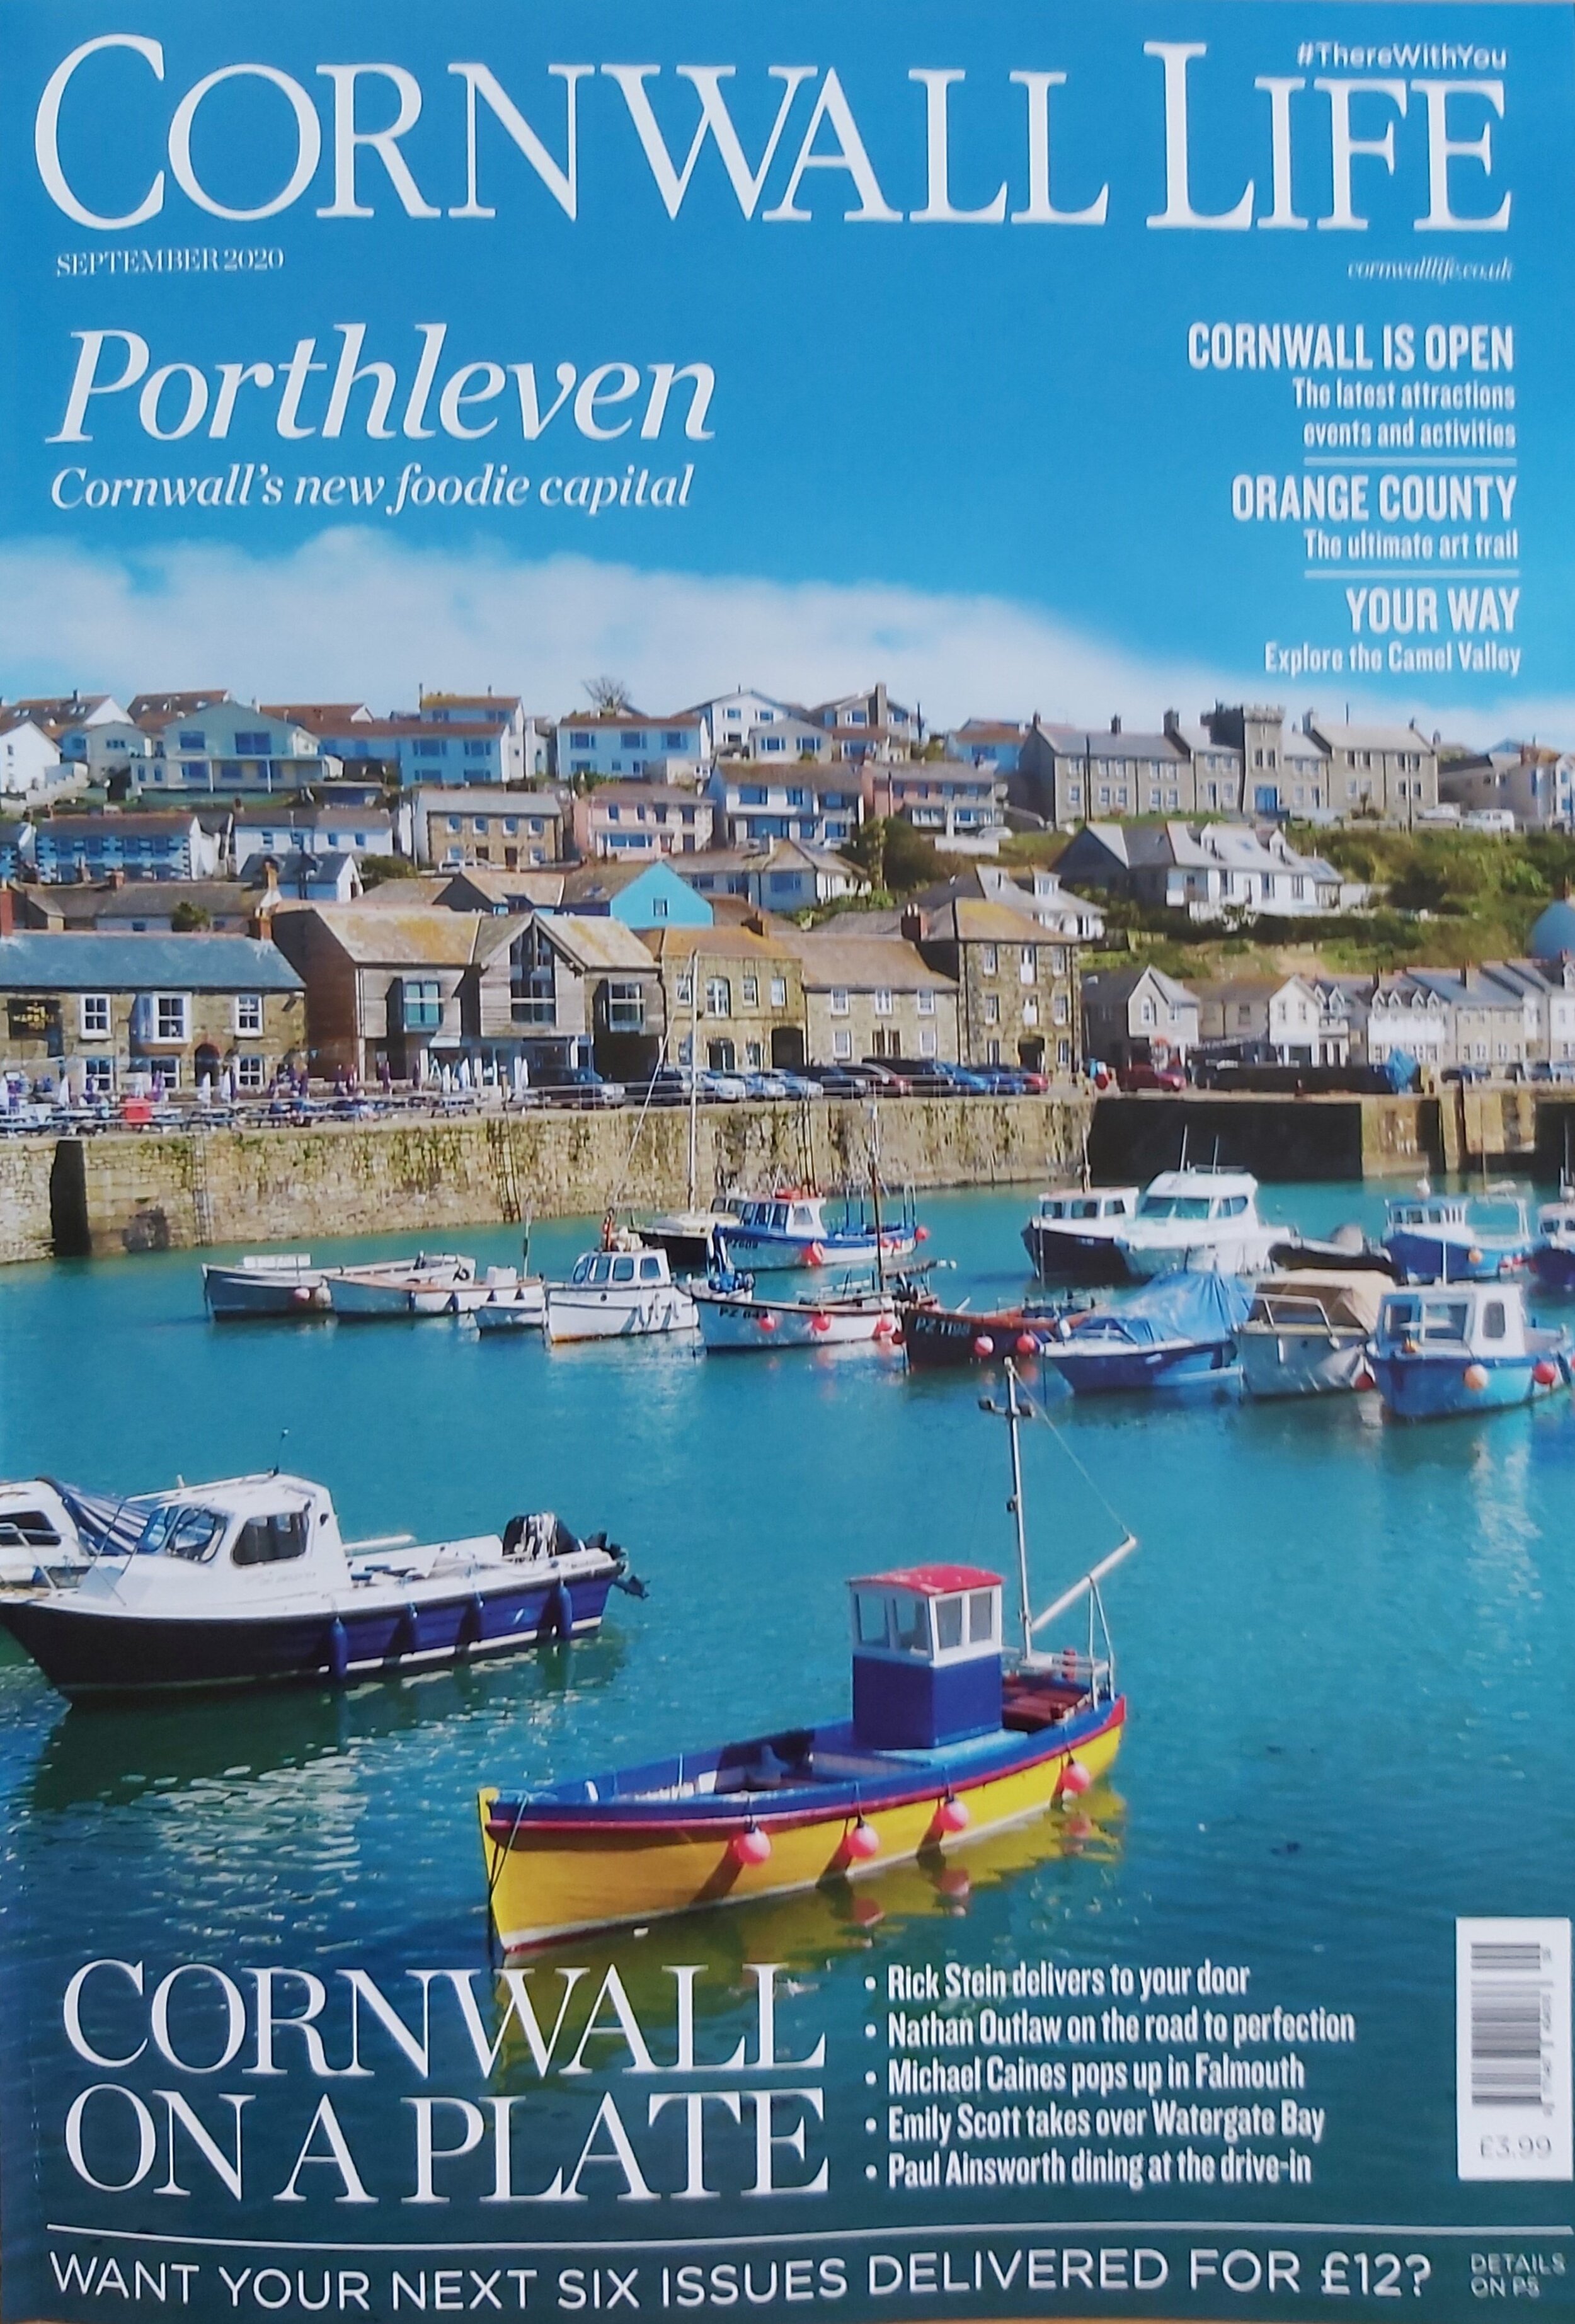 Cornwall Life - September 2020 - Front Cover.msg.jpg